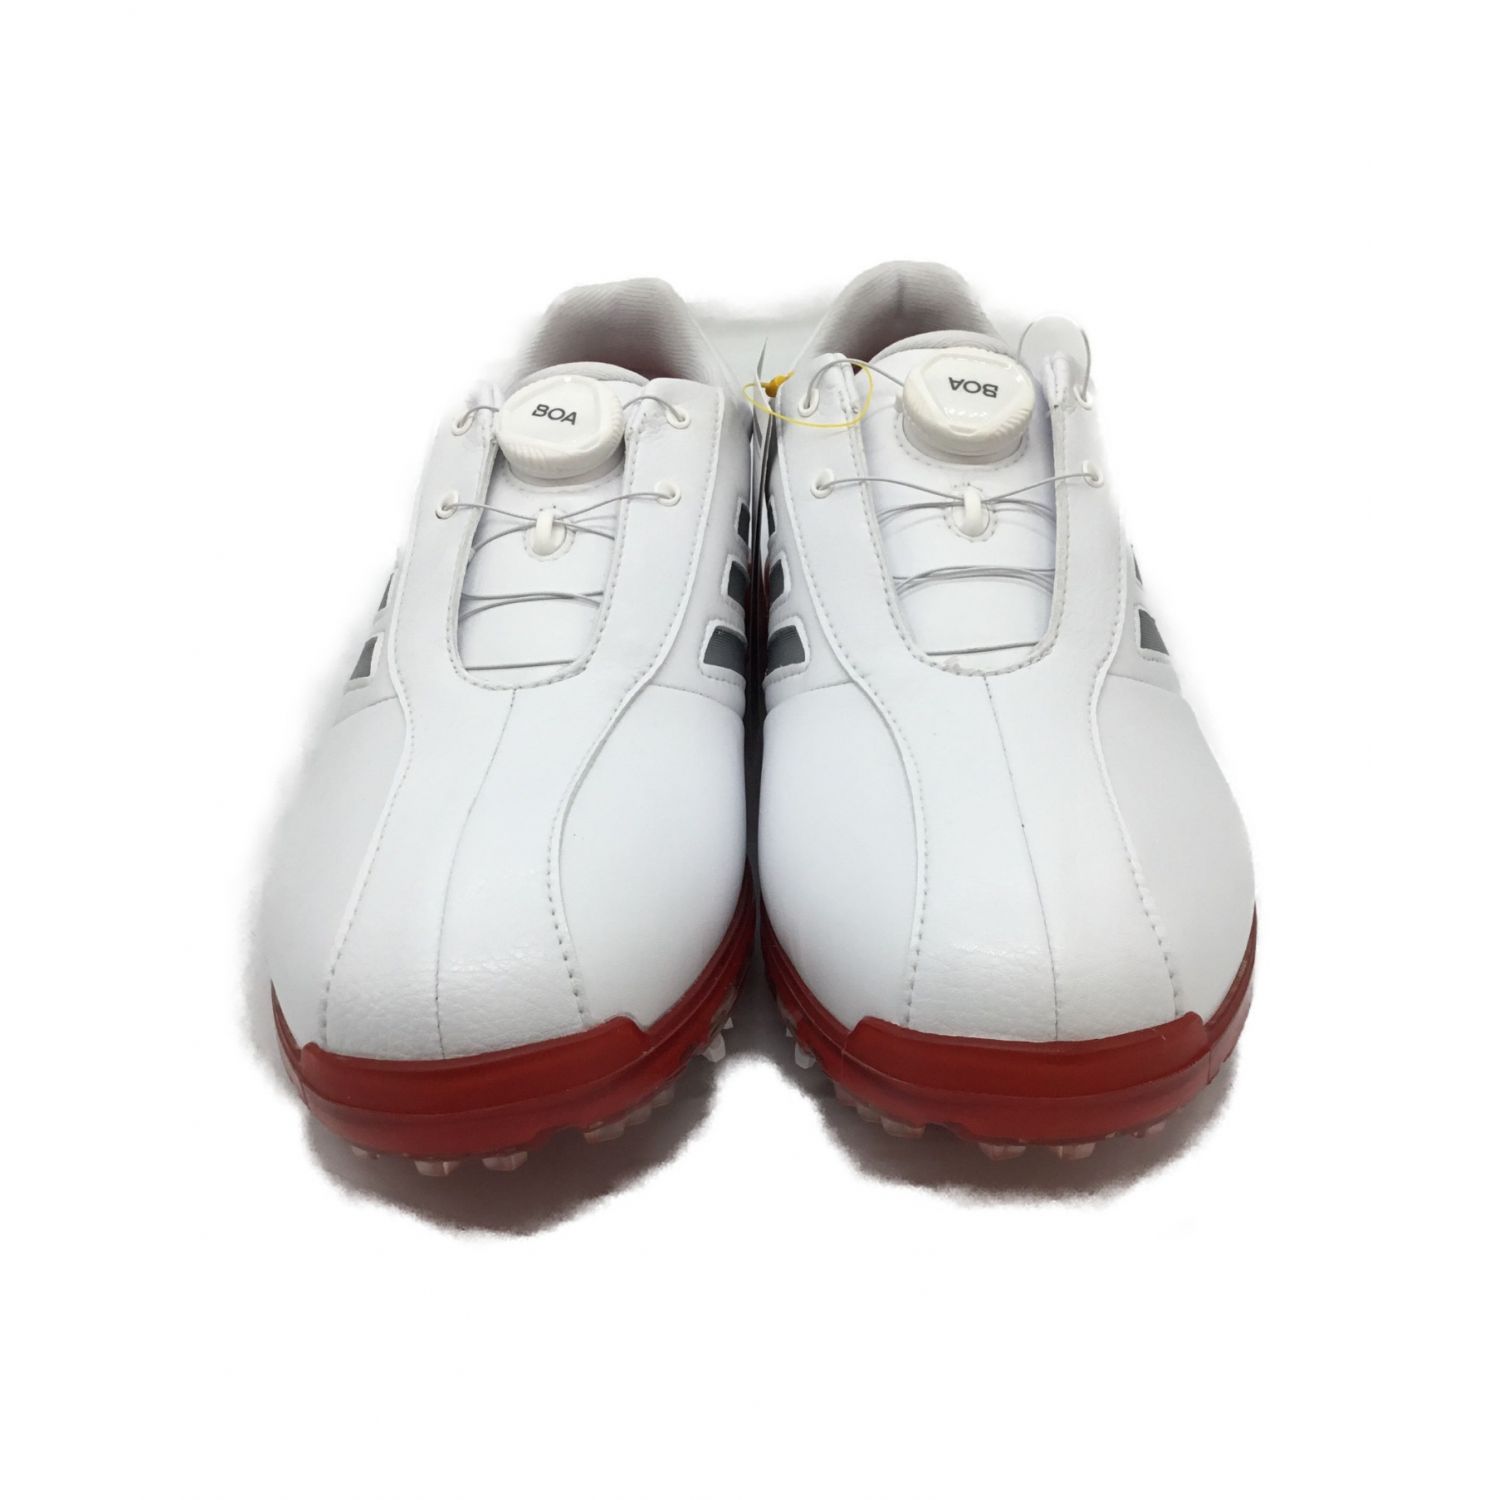 adidas (アディダス) ゴルフシューズ メンズ SIZE 25.5cm